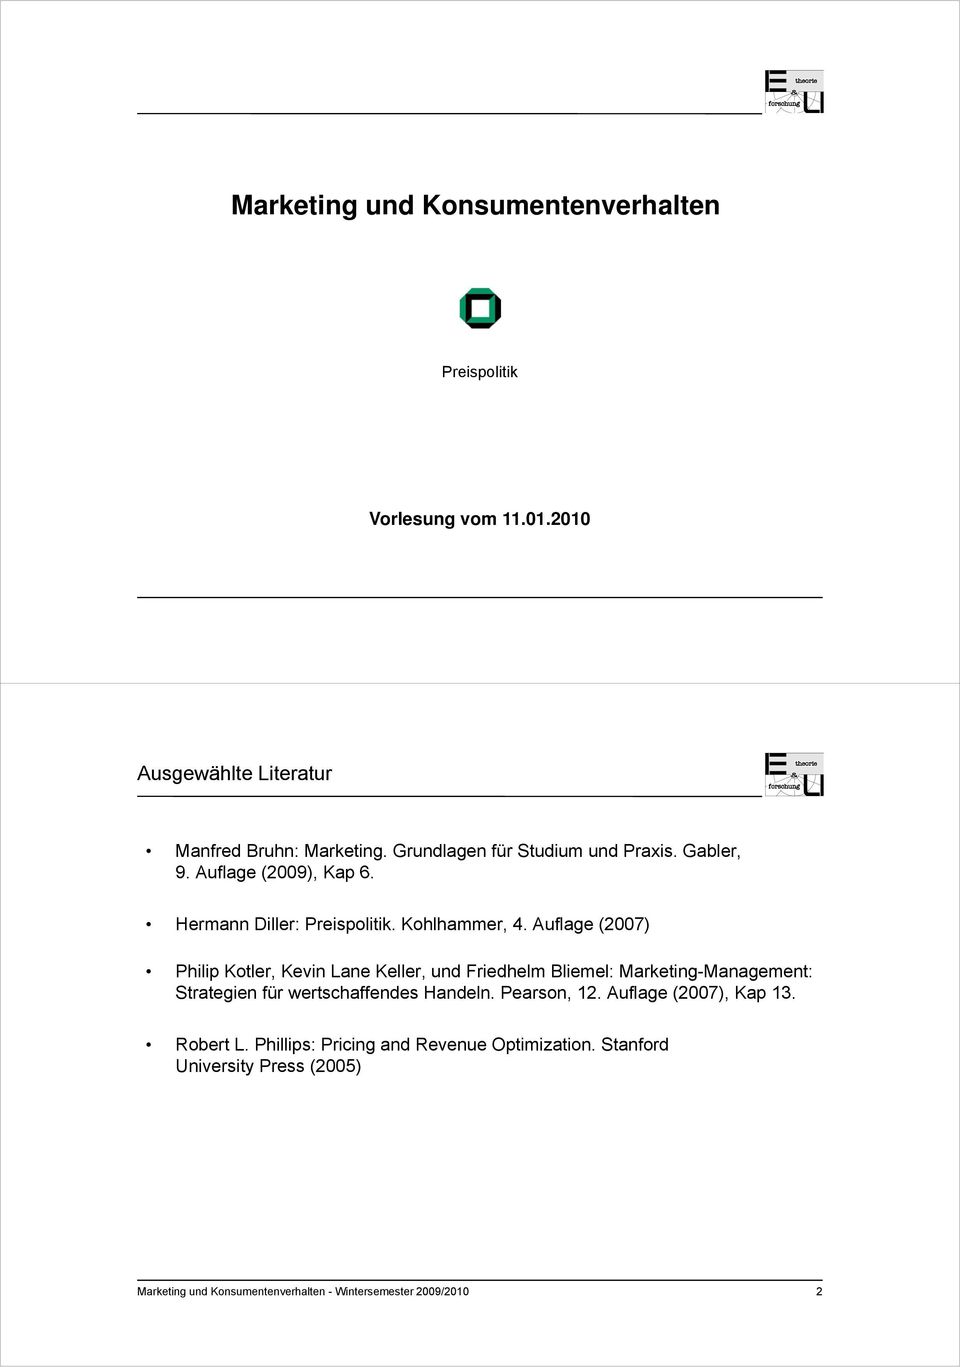 Auflage (2007) Philip Kotler, Kevin Lane Keller, und Friedhelm Bliemel: Marketing-Management: Strategien für wertschaffendes Handeln.